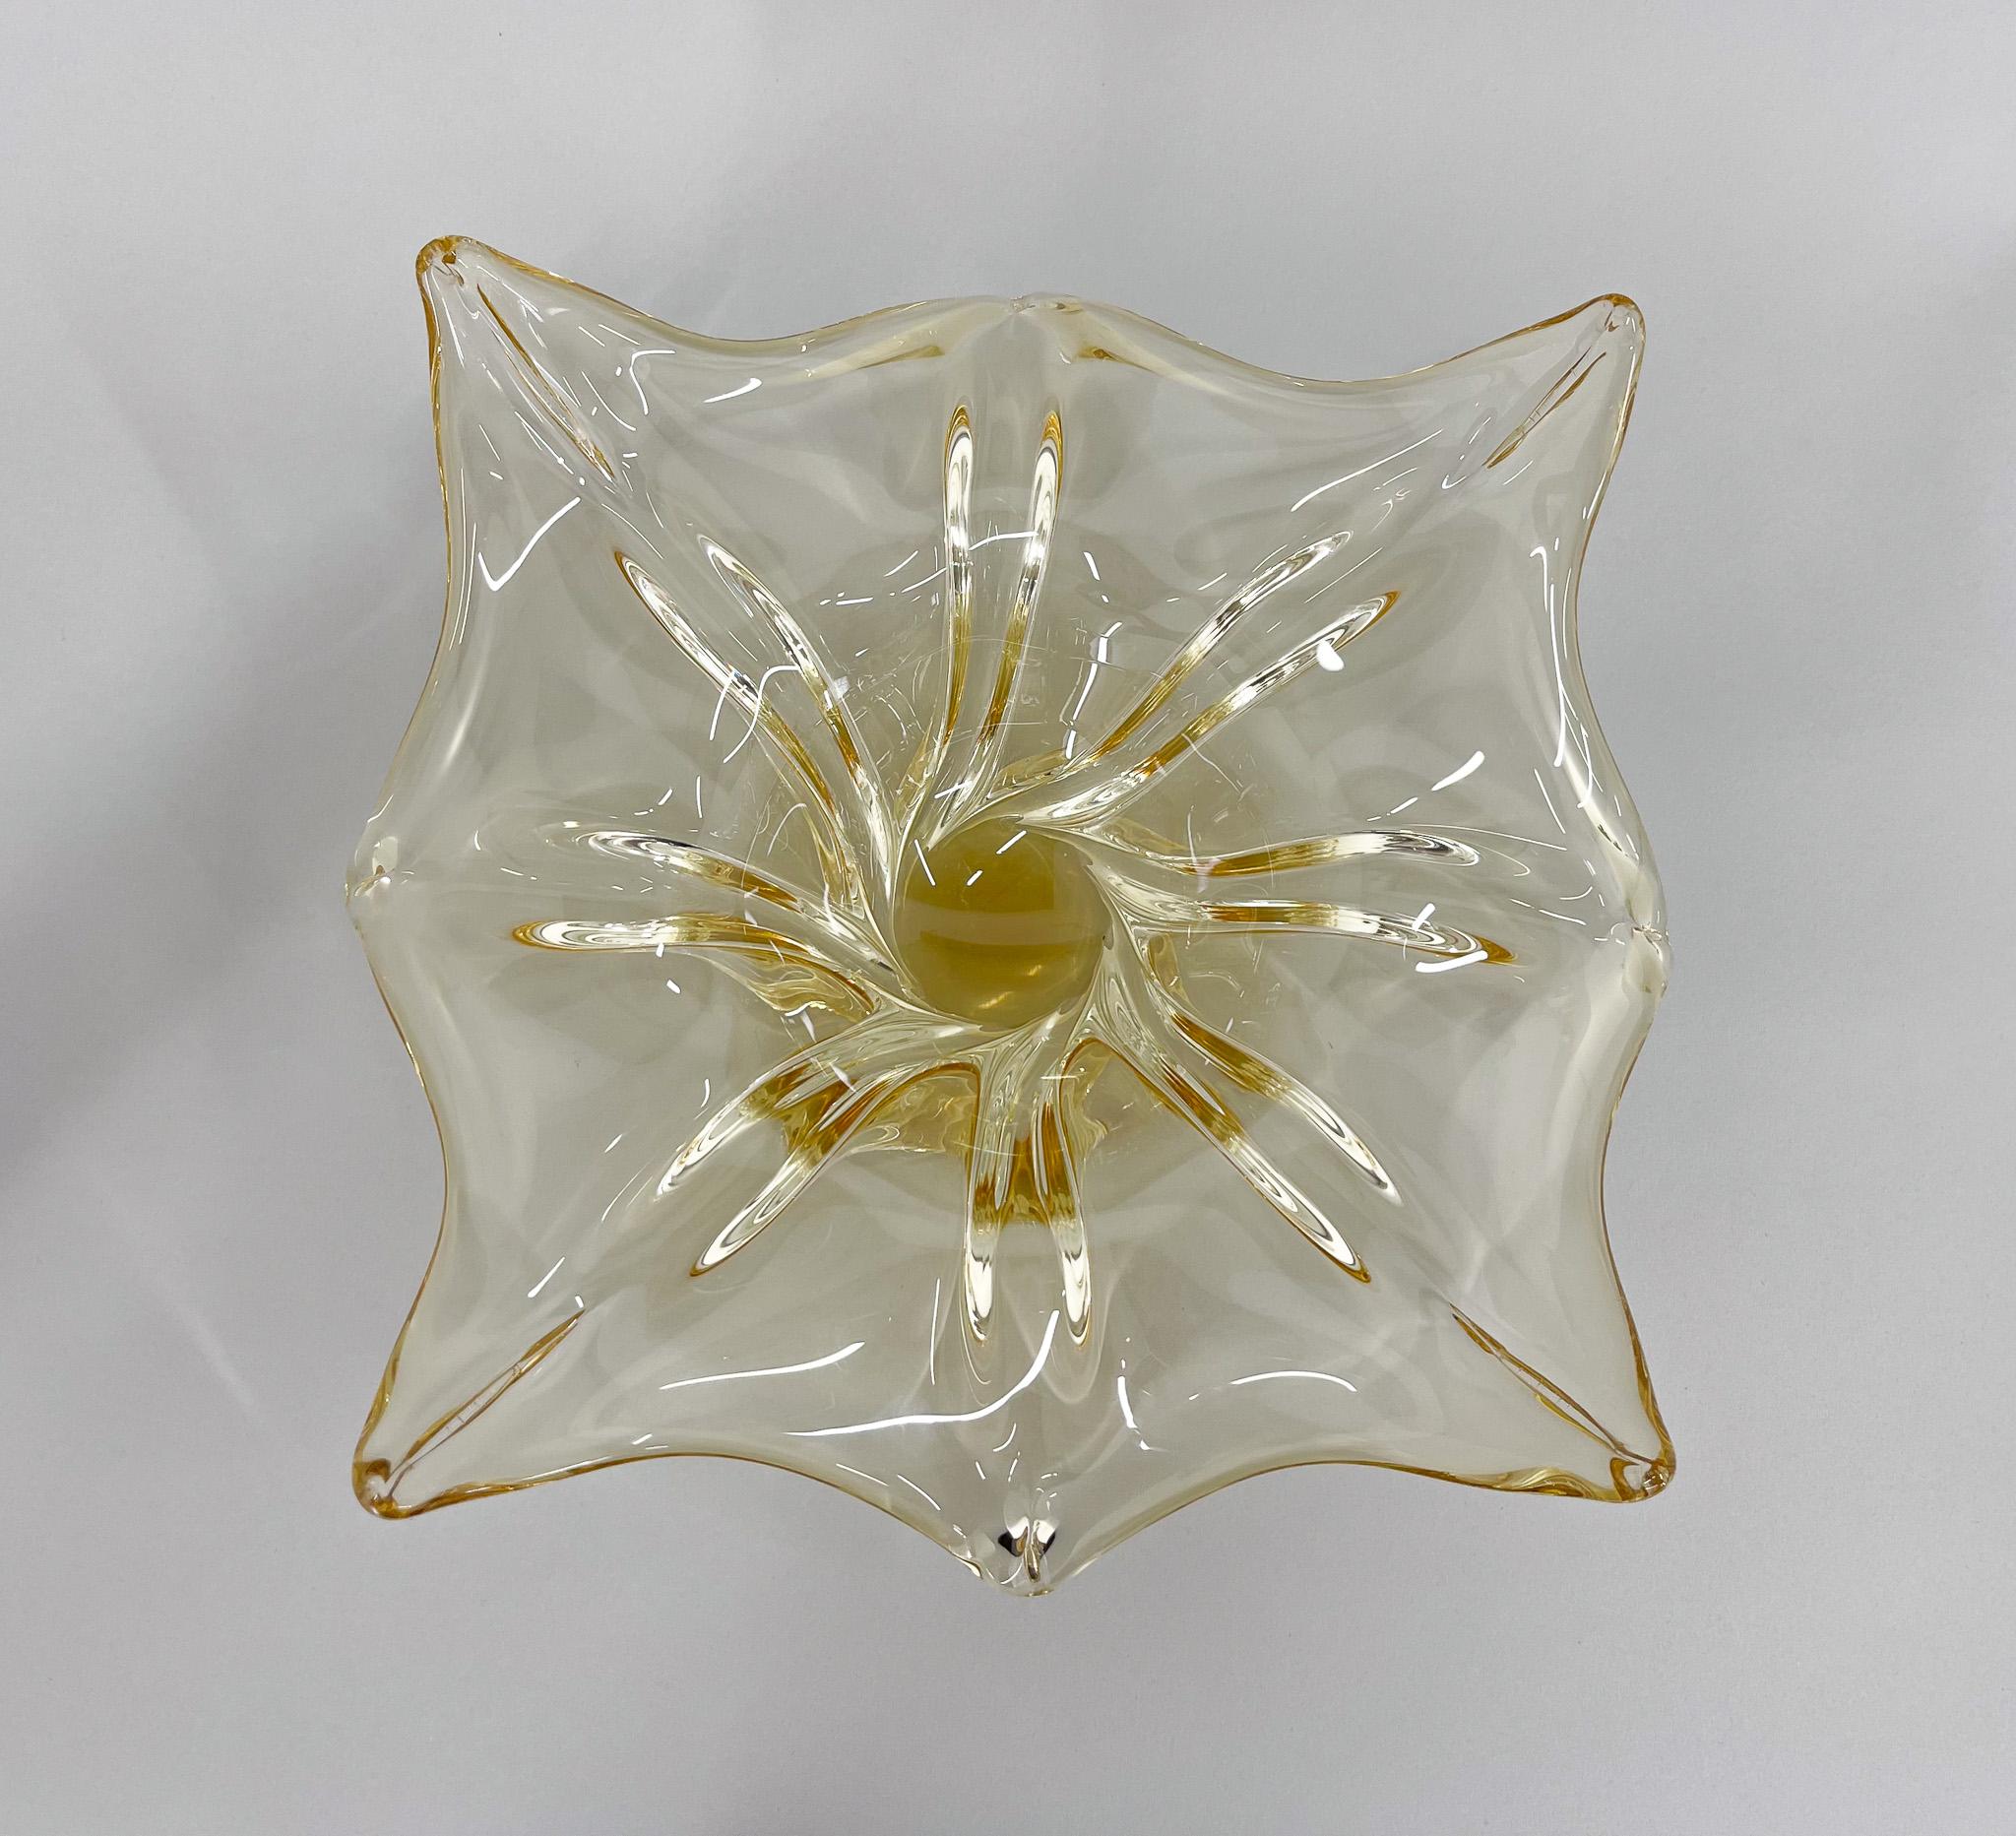 20th Century Czech Art Glass Bowl by Josef Hospodka for Chribska Glassworks, 1960s For Sale